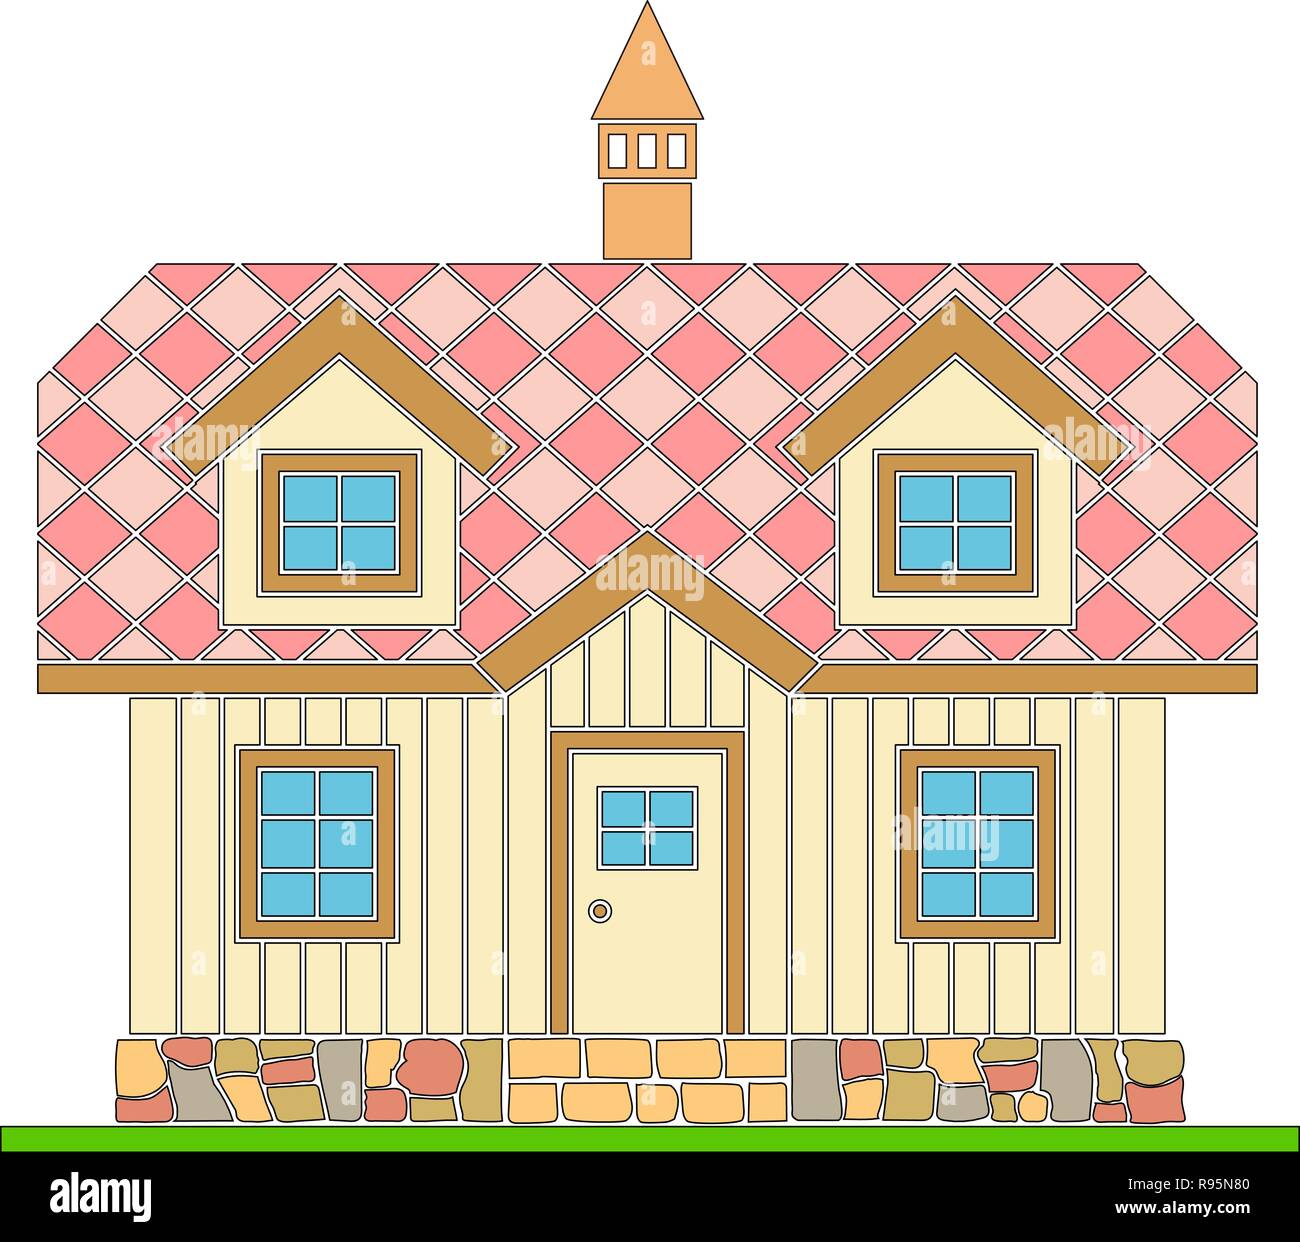 Maison traditionnelle en bois avec un quartier résidentiel grenier. Le toit est couvert de tuiles multicolores. Illustration vecteur de la couleur d'ossature. Illustration de Vecteur